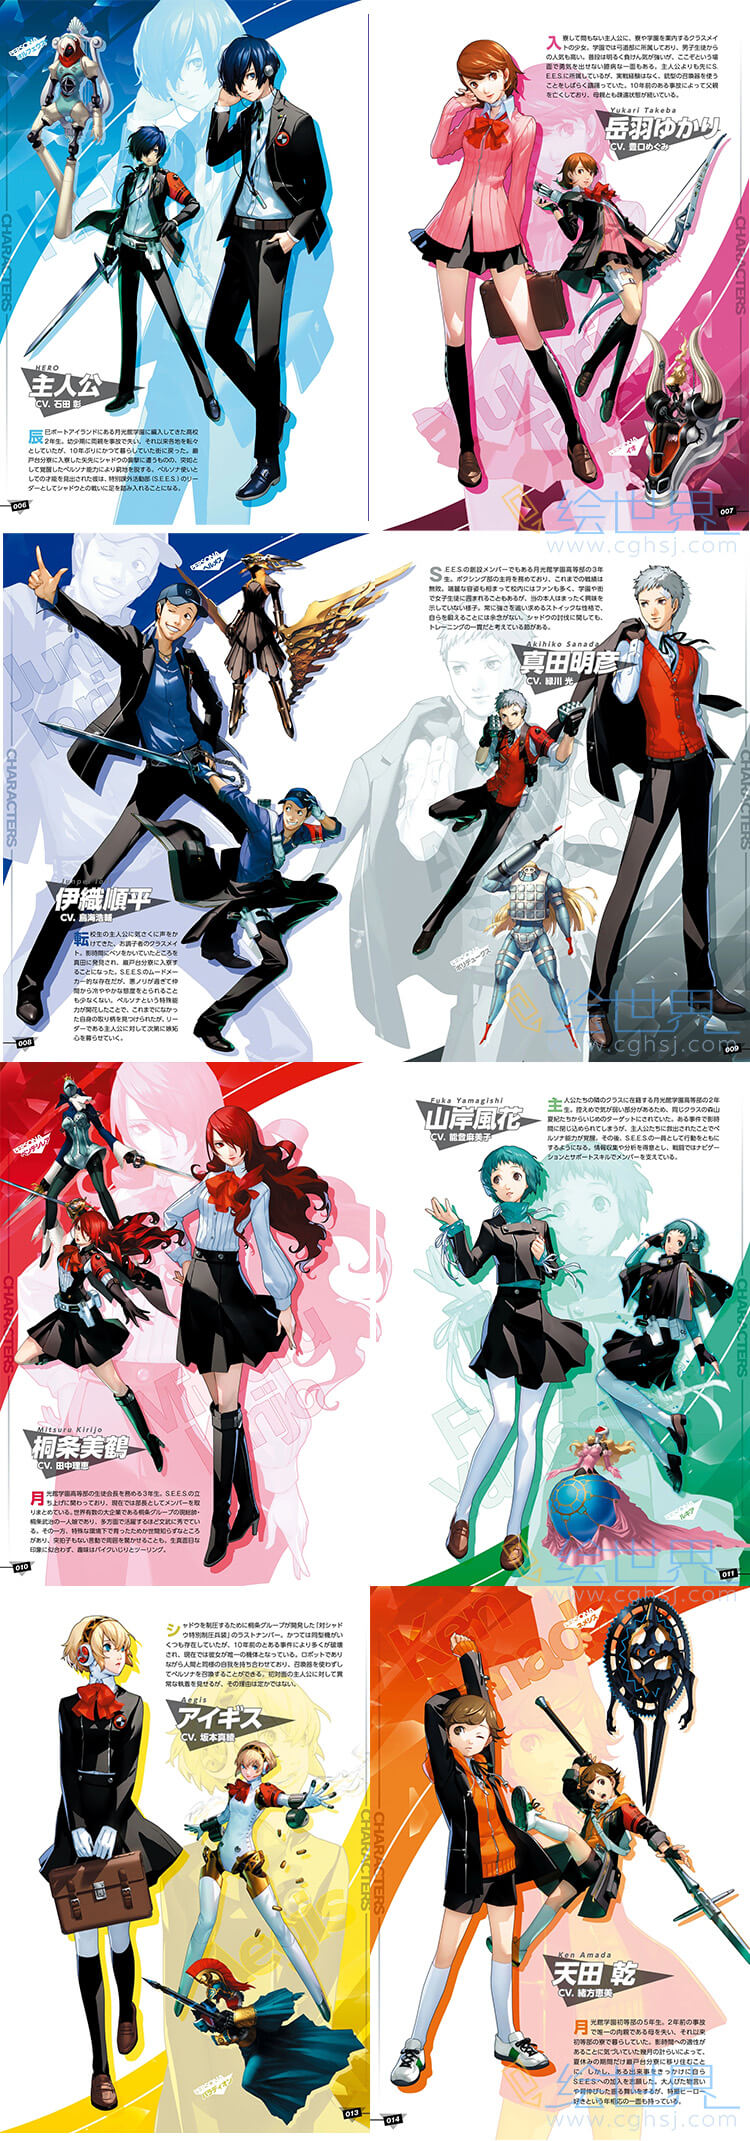 [会员][设定集] 副岛成记 Persona 3 Reload Official Complete Guide